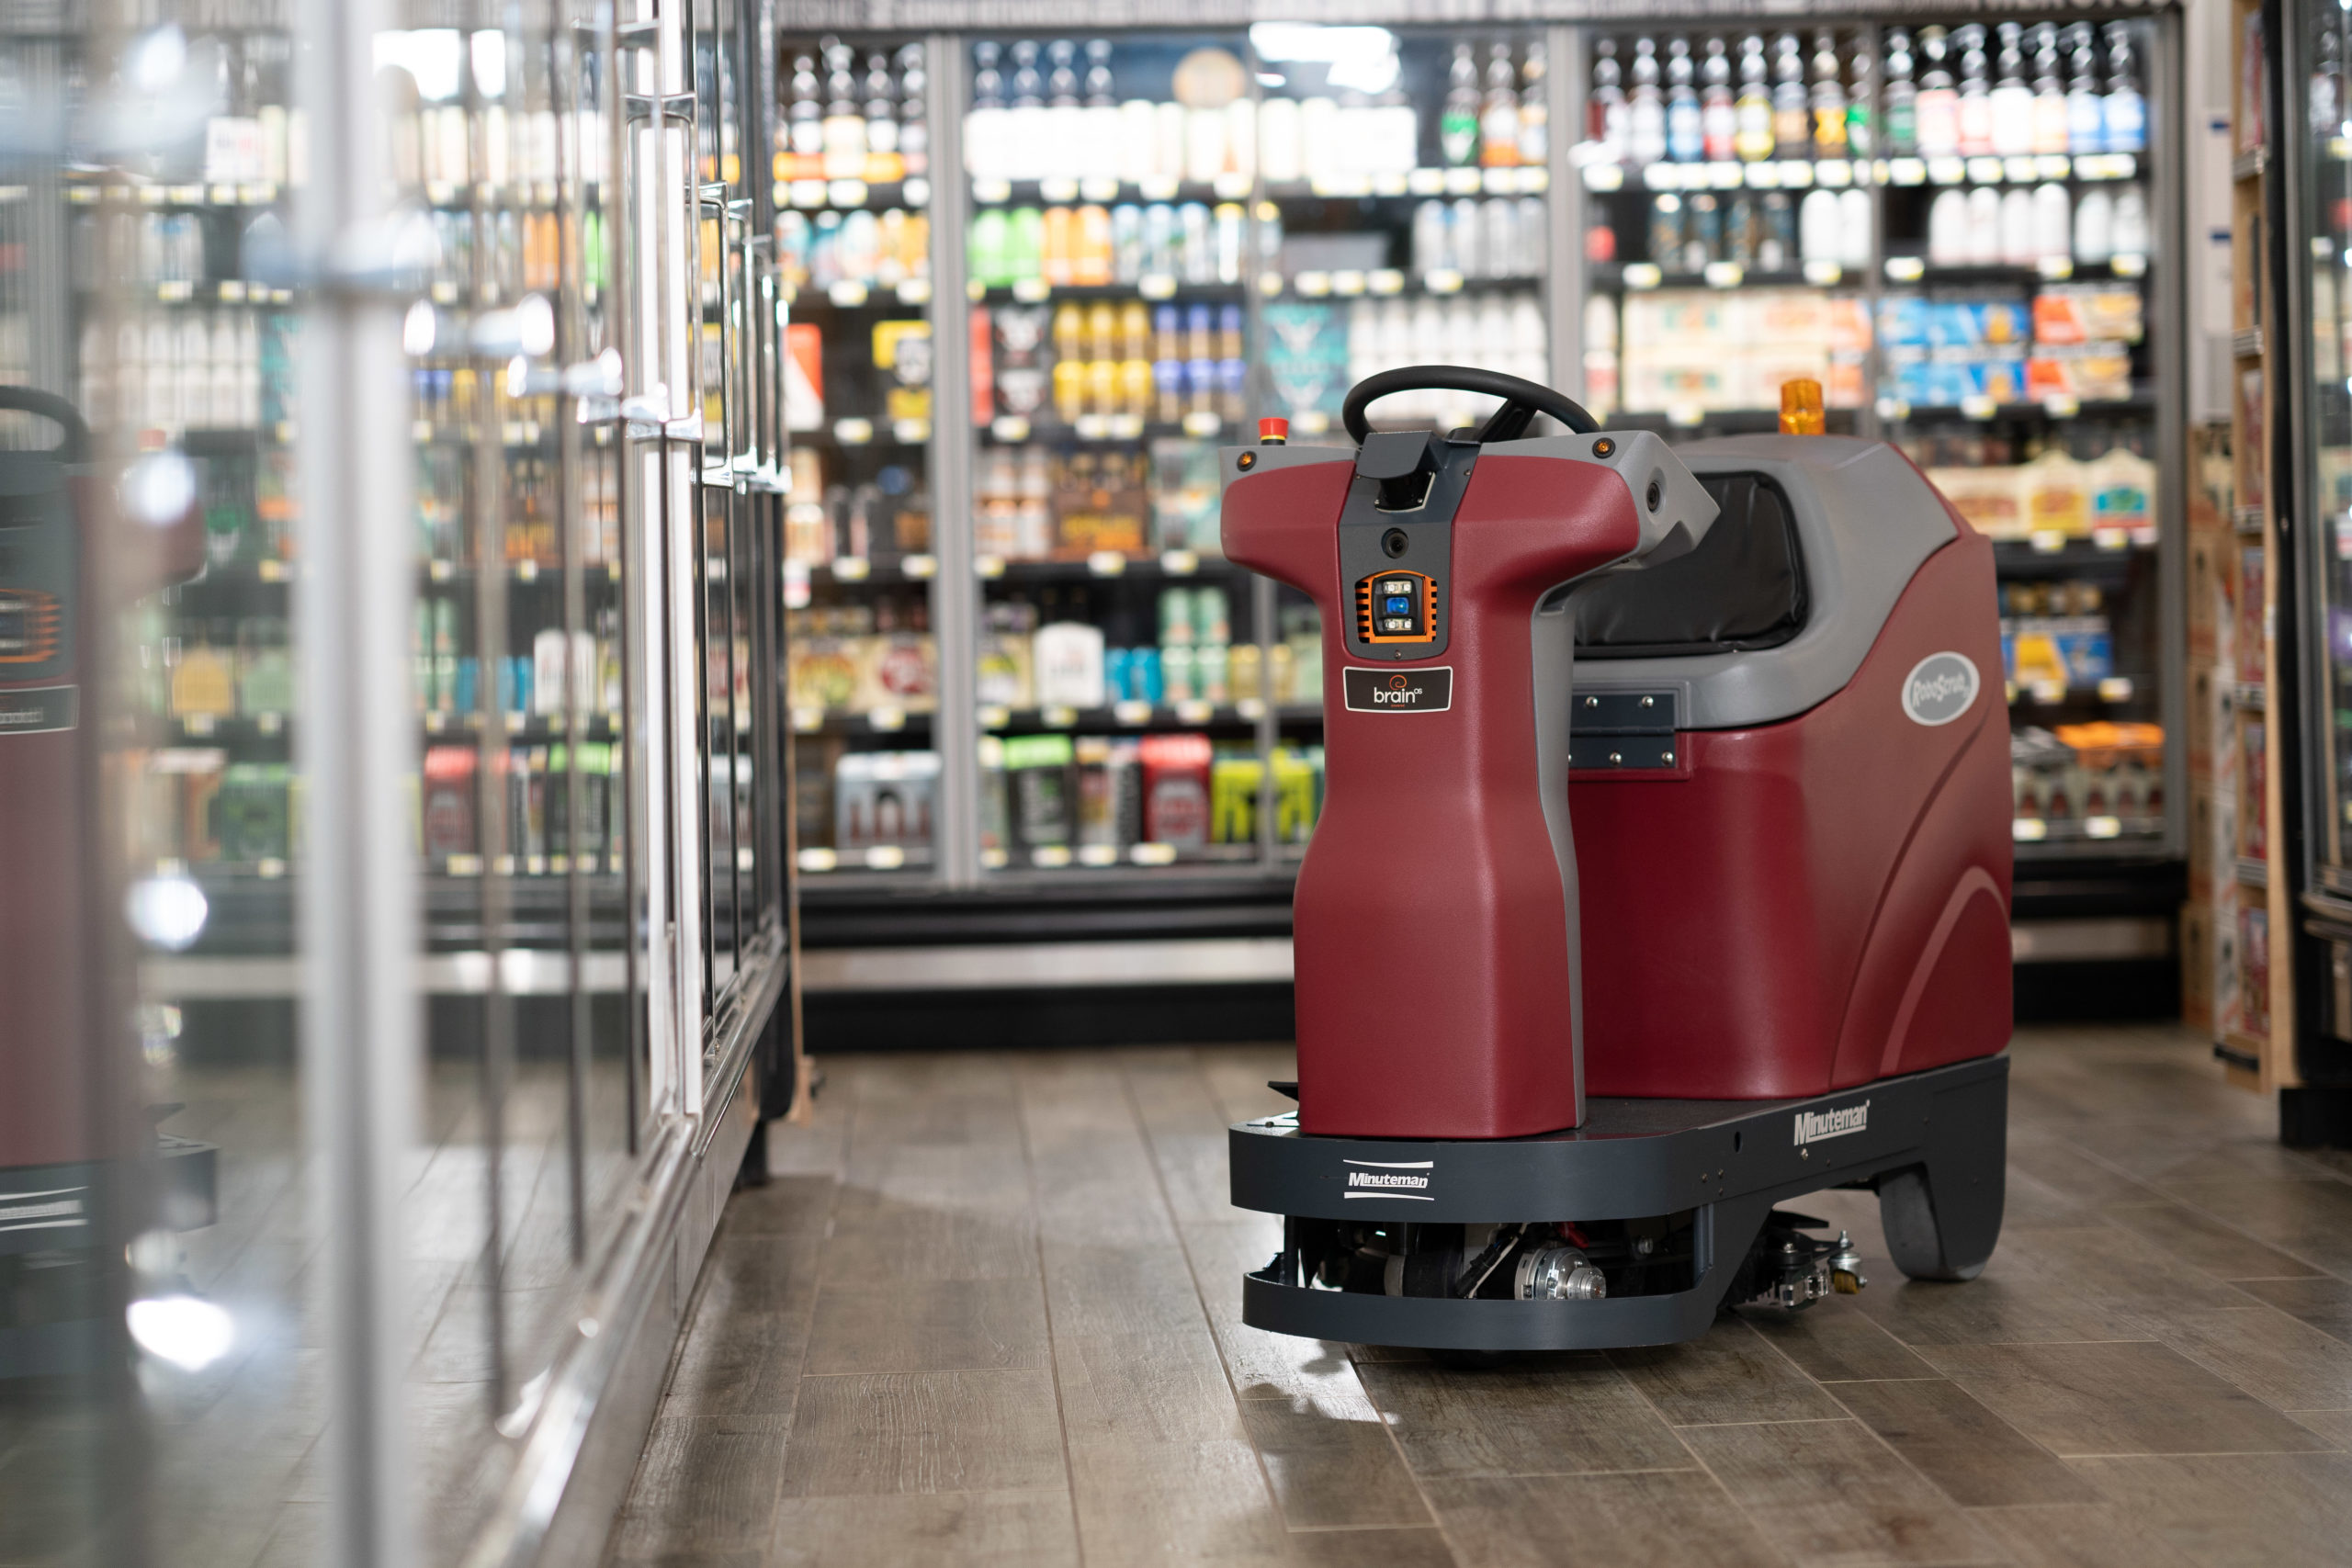 RoboScrub 20 robotic floor scrubber in a grocery store aisle